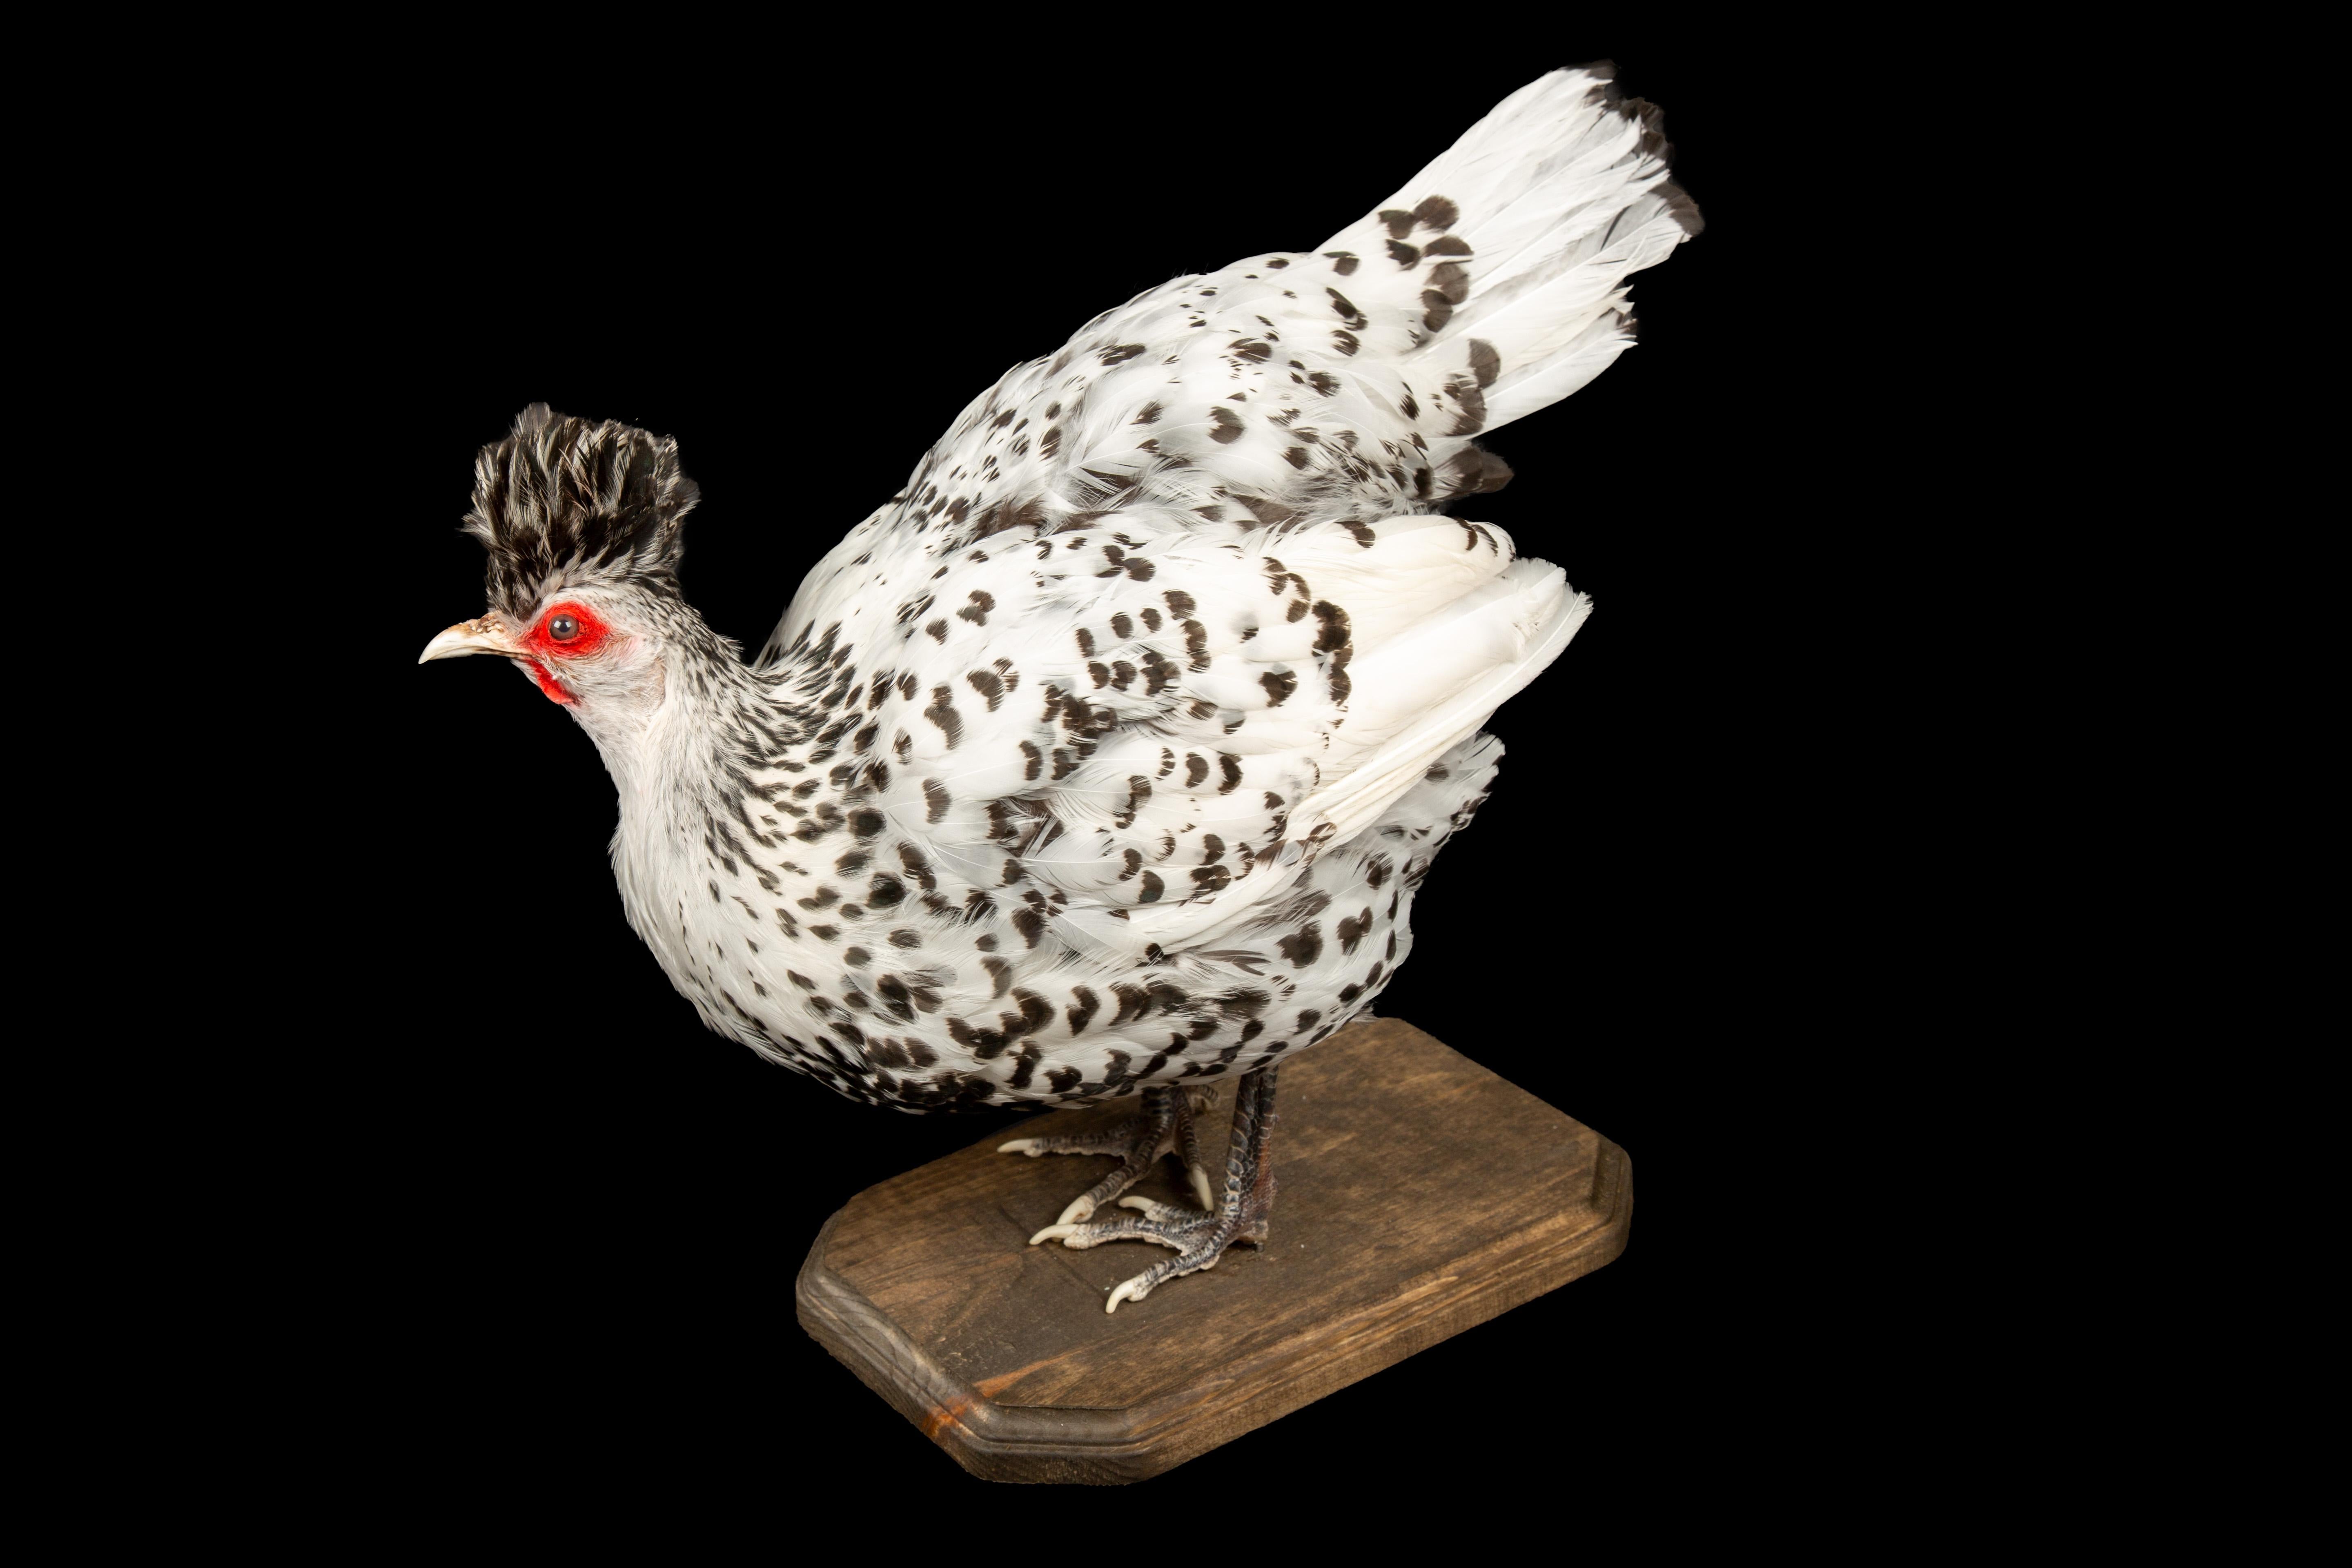 American Taxidermy Black and White Appenzeller Spitzhauben Chicken